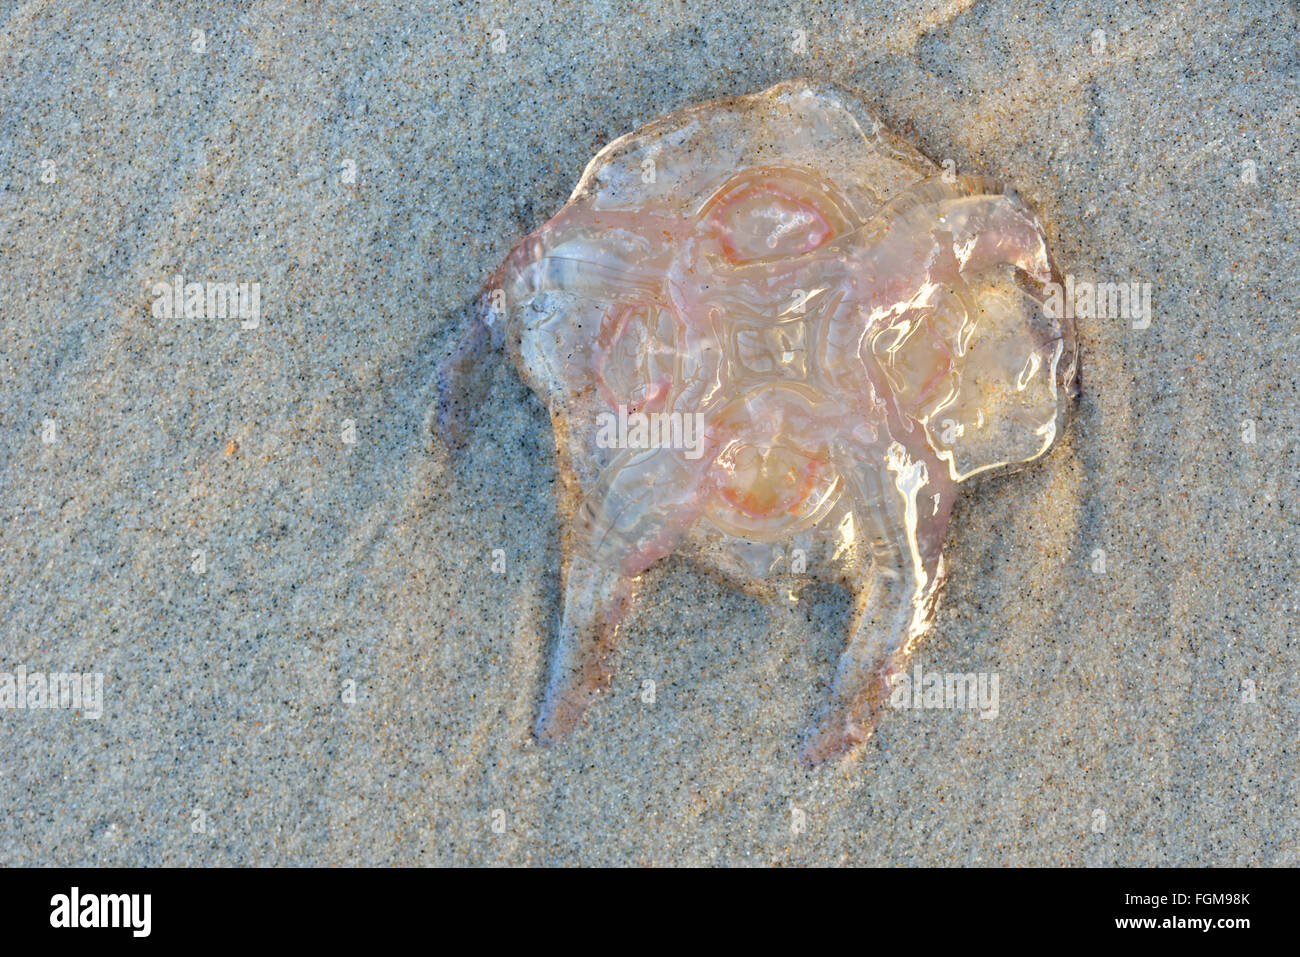 Méduse à crinière de lion (Cyanea capillata) sur la plage de sable, Rügen, Mecklembourg-Poméranie-Occidentale, de la mer Baltique, Allemagne Banque D'Images